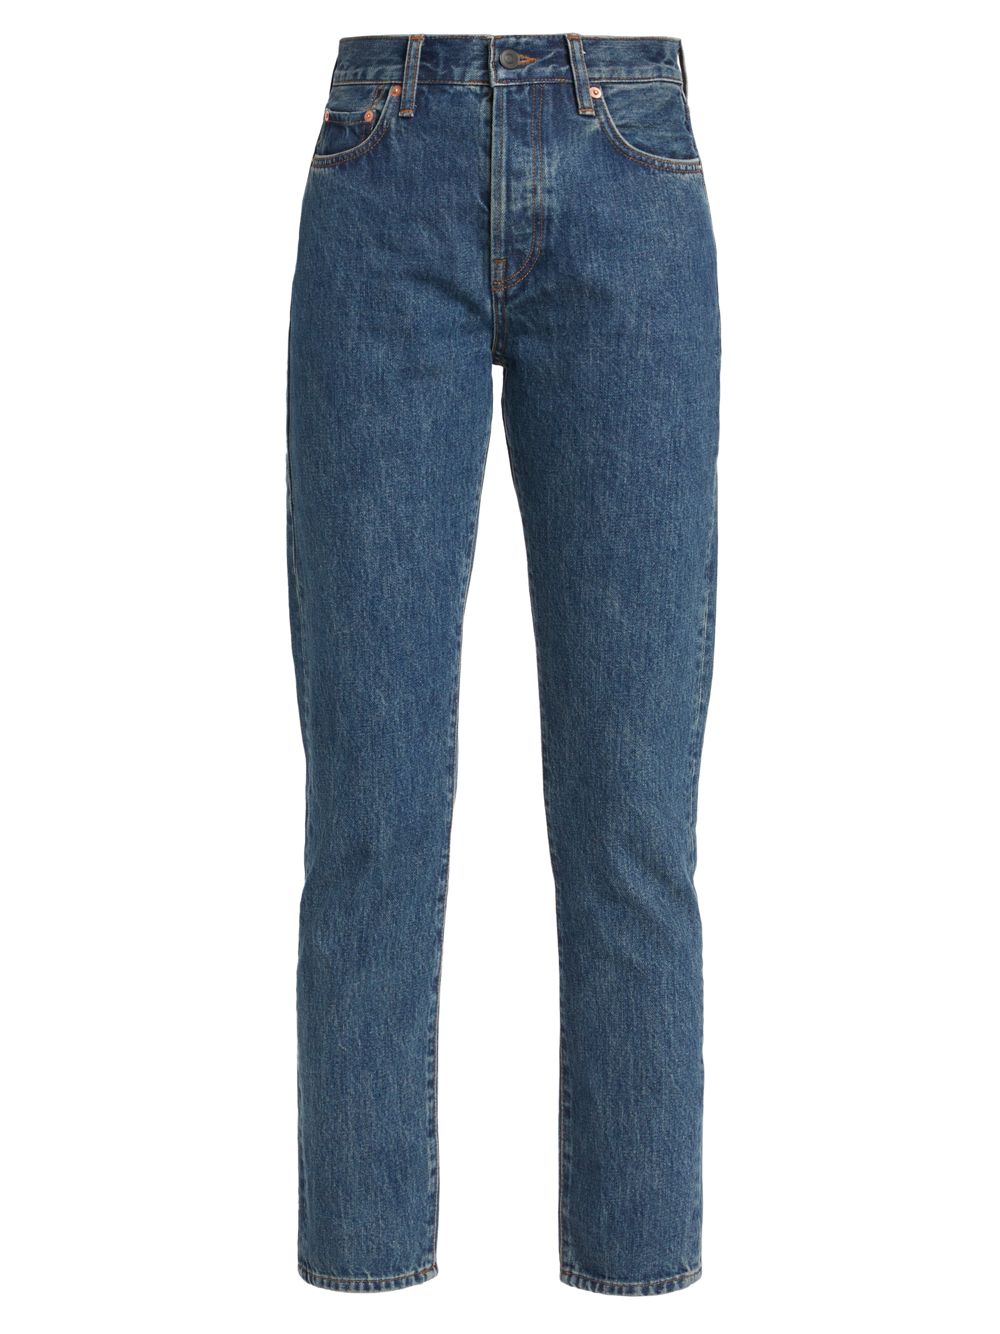 цена Узкие джинсы со средней посадкой WARDROBE.NYC, индиго